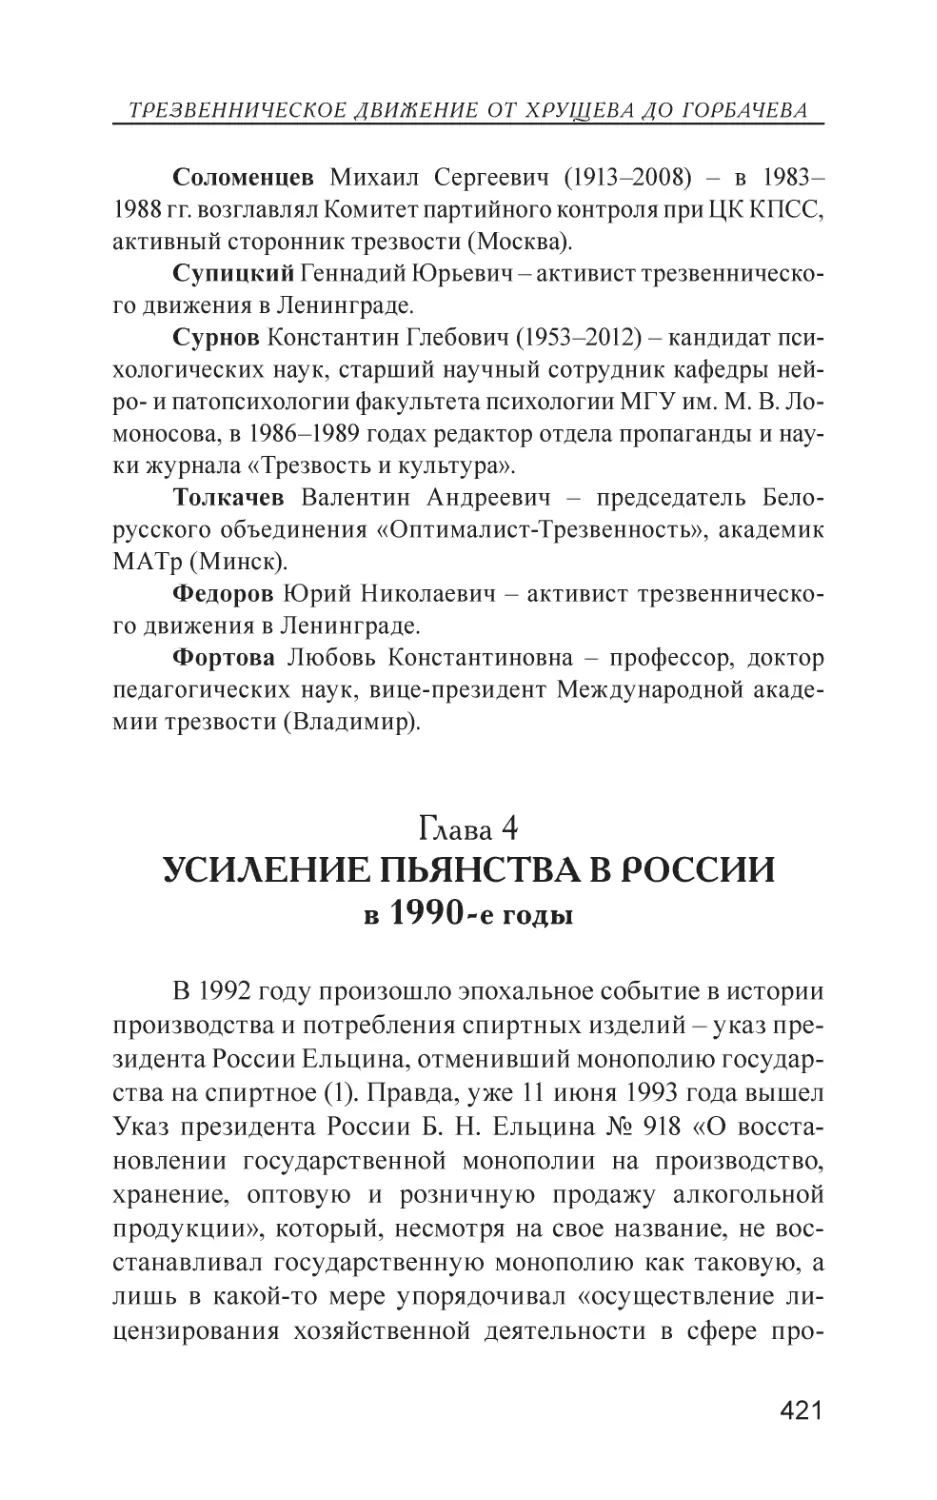 Глава 4. Усиление пьянства в России в 1990-е годы